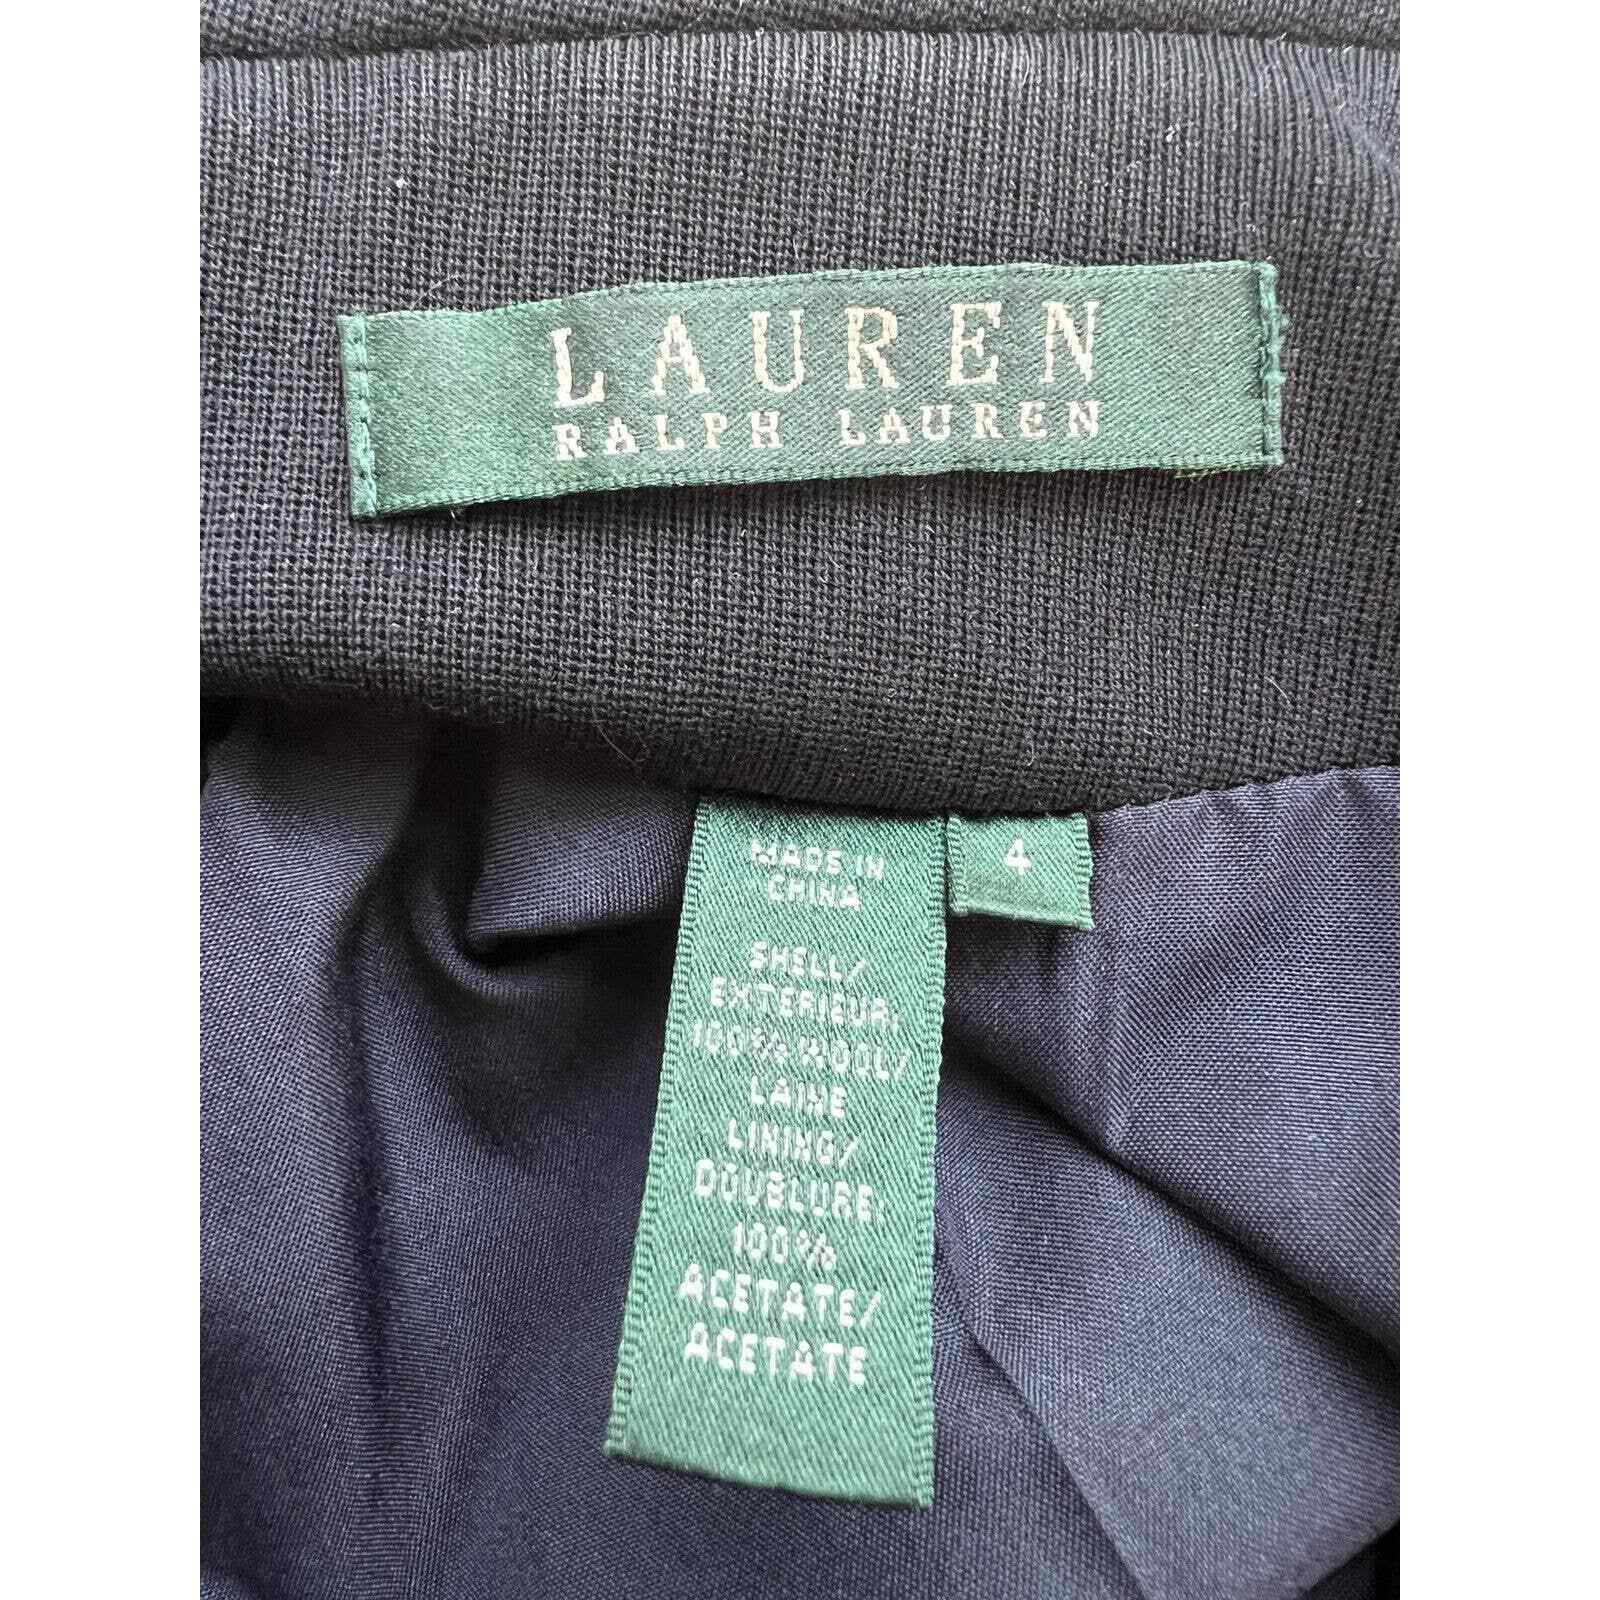 Lauren Ralph Lauren Blazer Women’s Size 4 100% Wool Black Gold Buttons